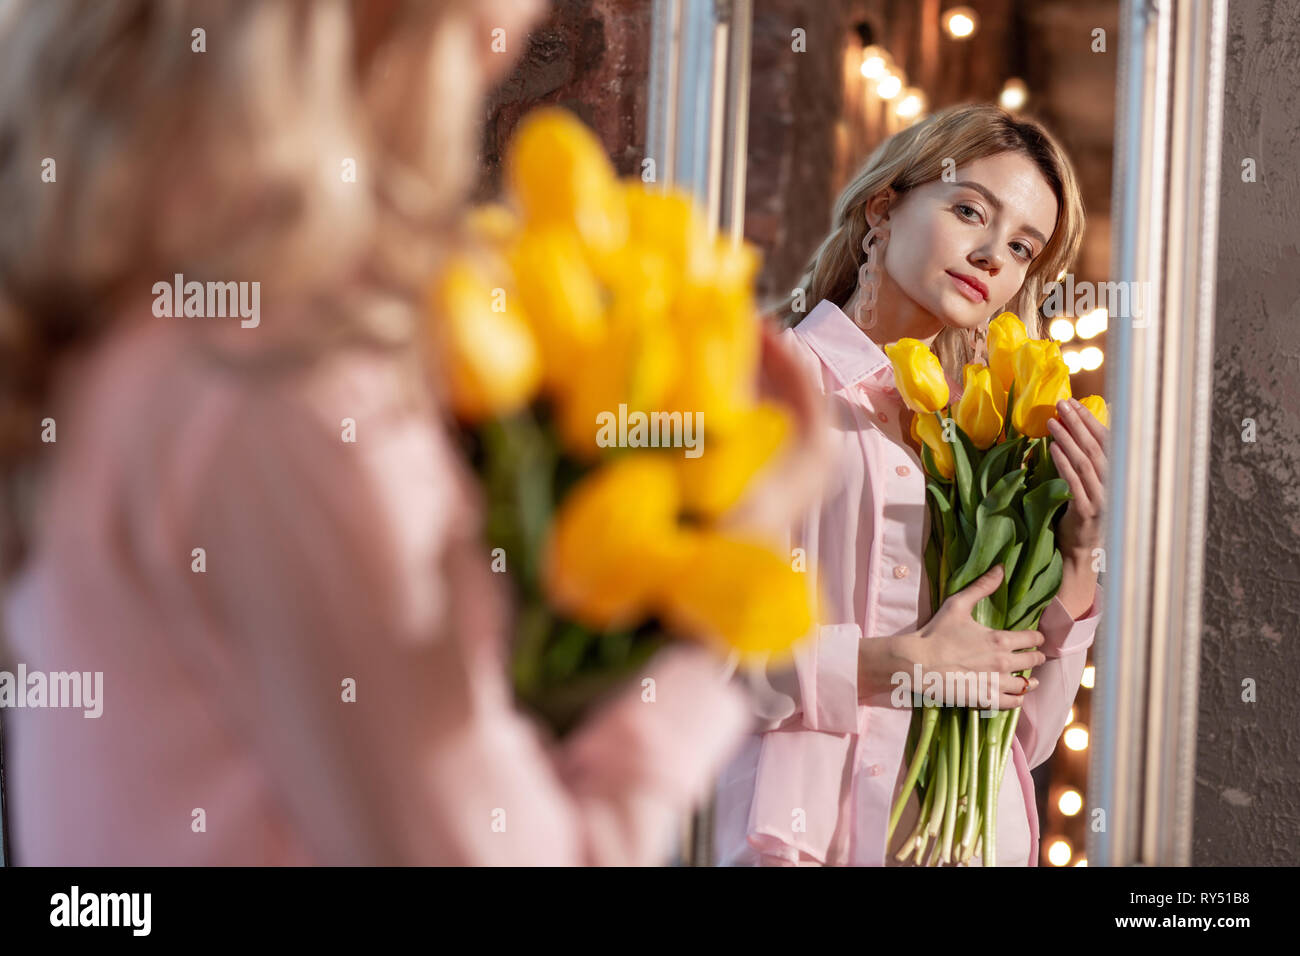 Attraente donna che indossa camicetta rosa azienda fiori gialli Foto Stock